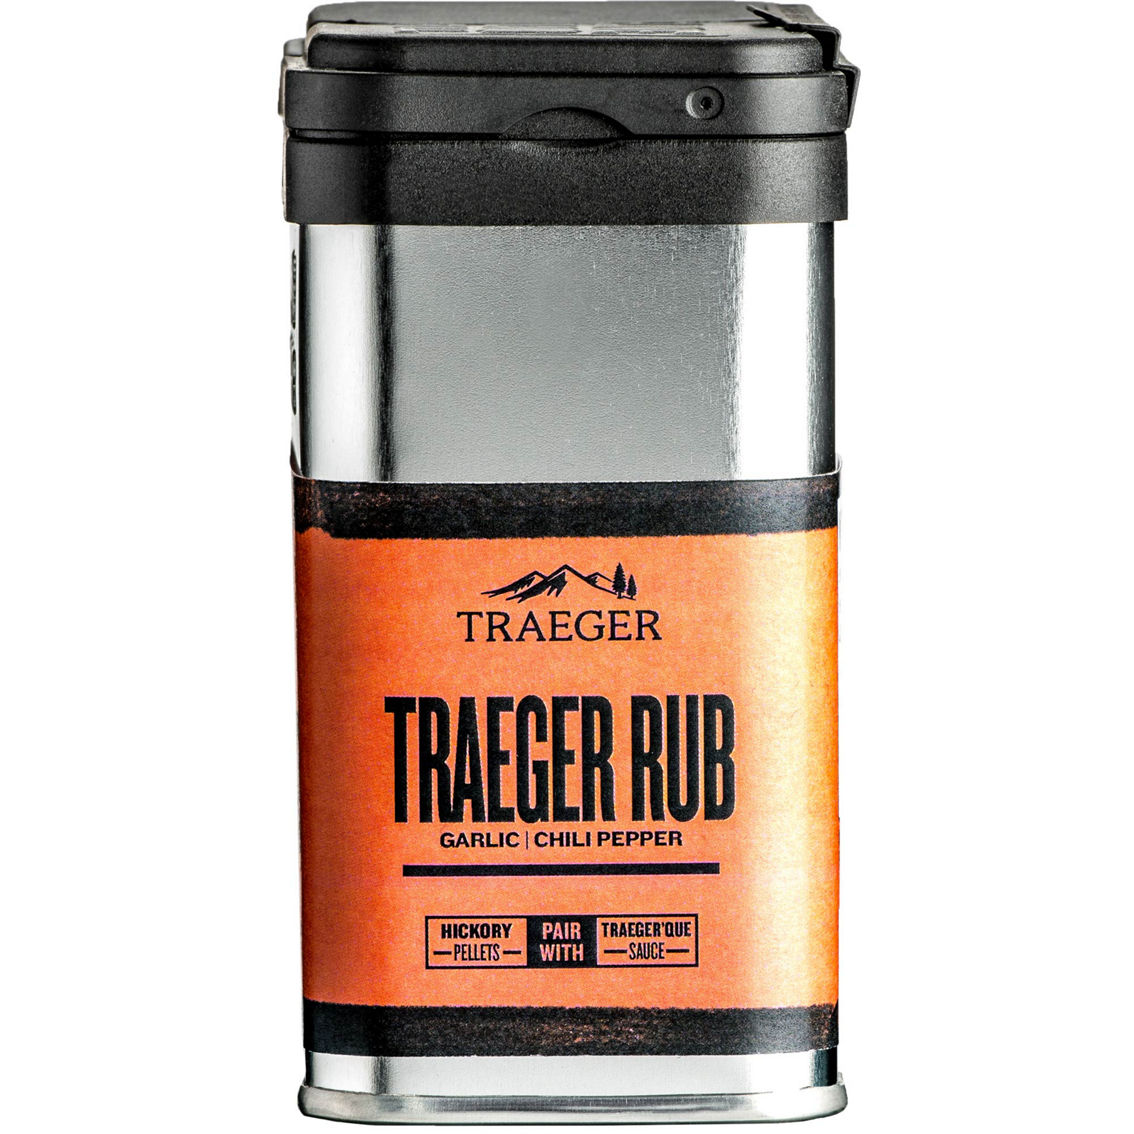 Traeger Rub 9 oz. - Image 3 of 3